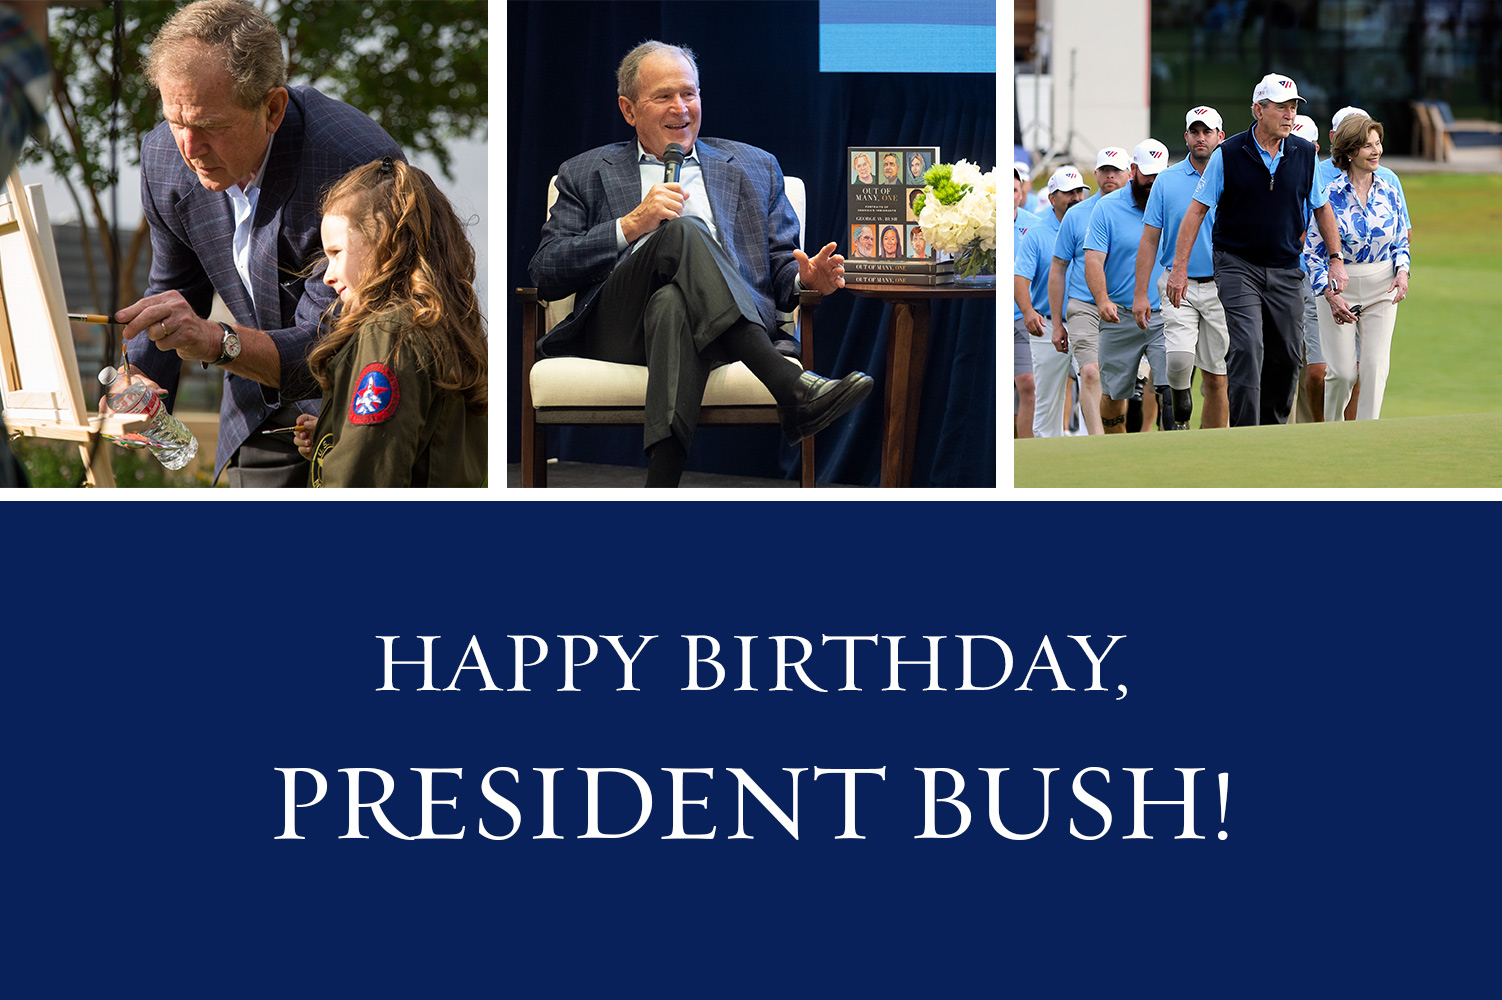 Happy birthday, President Bush!